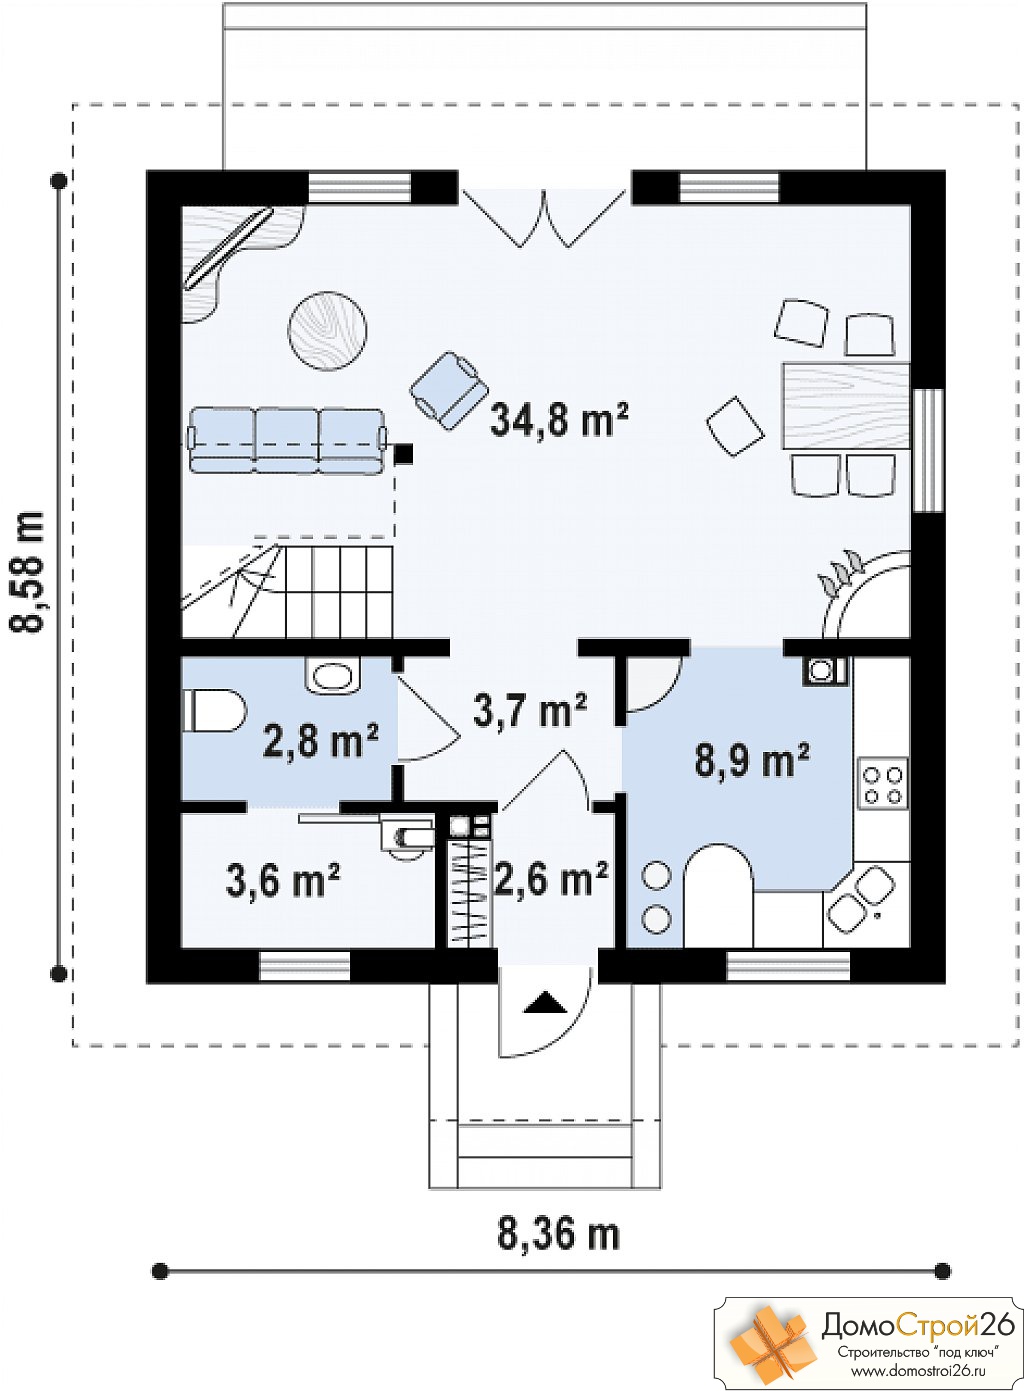 Проект каркасного дома Агата - План 1 этажа